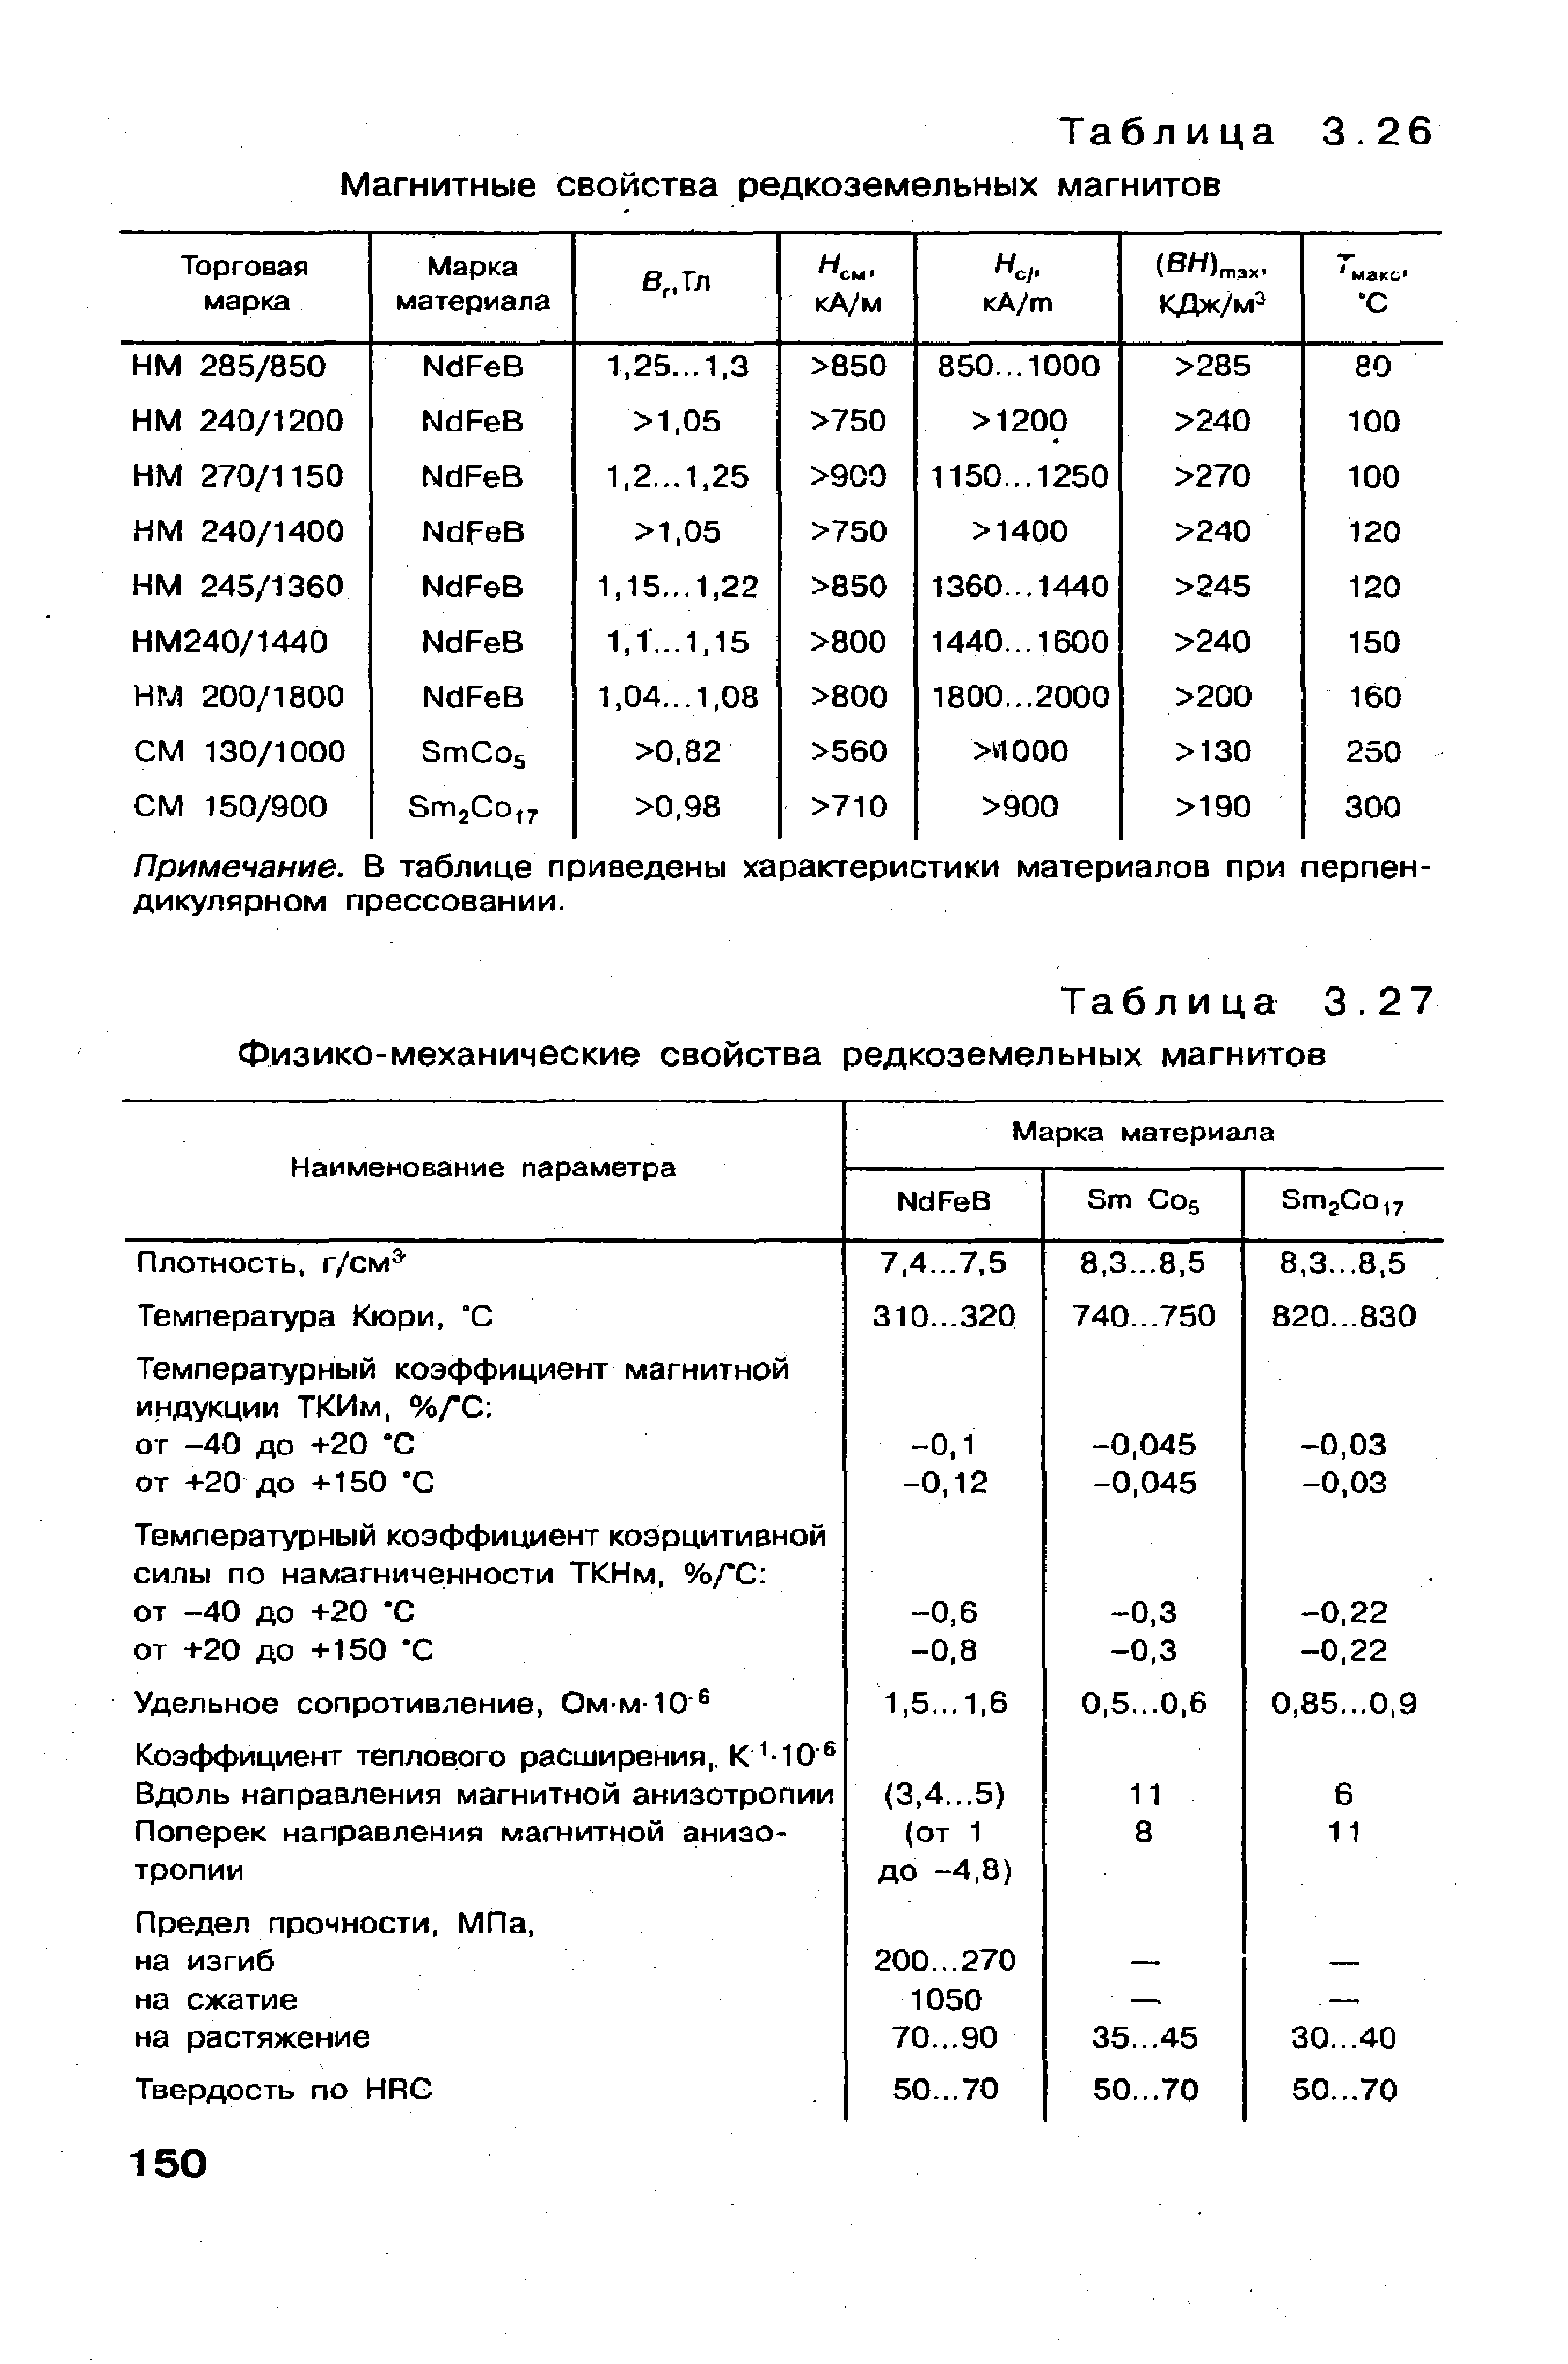 Таблица 3.27 Физико-механические свойства редкоземельных магнитов
